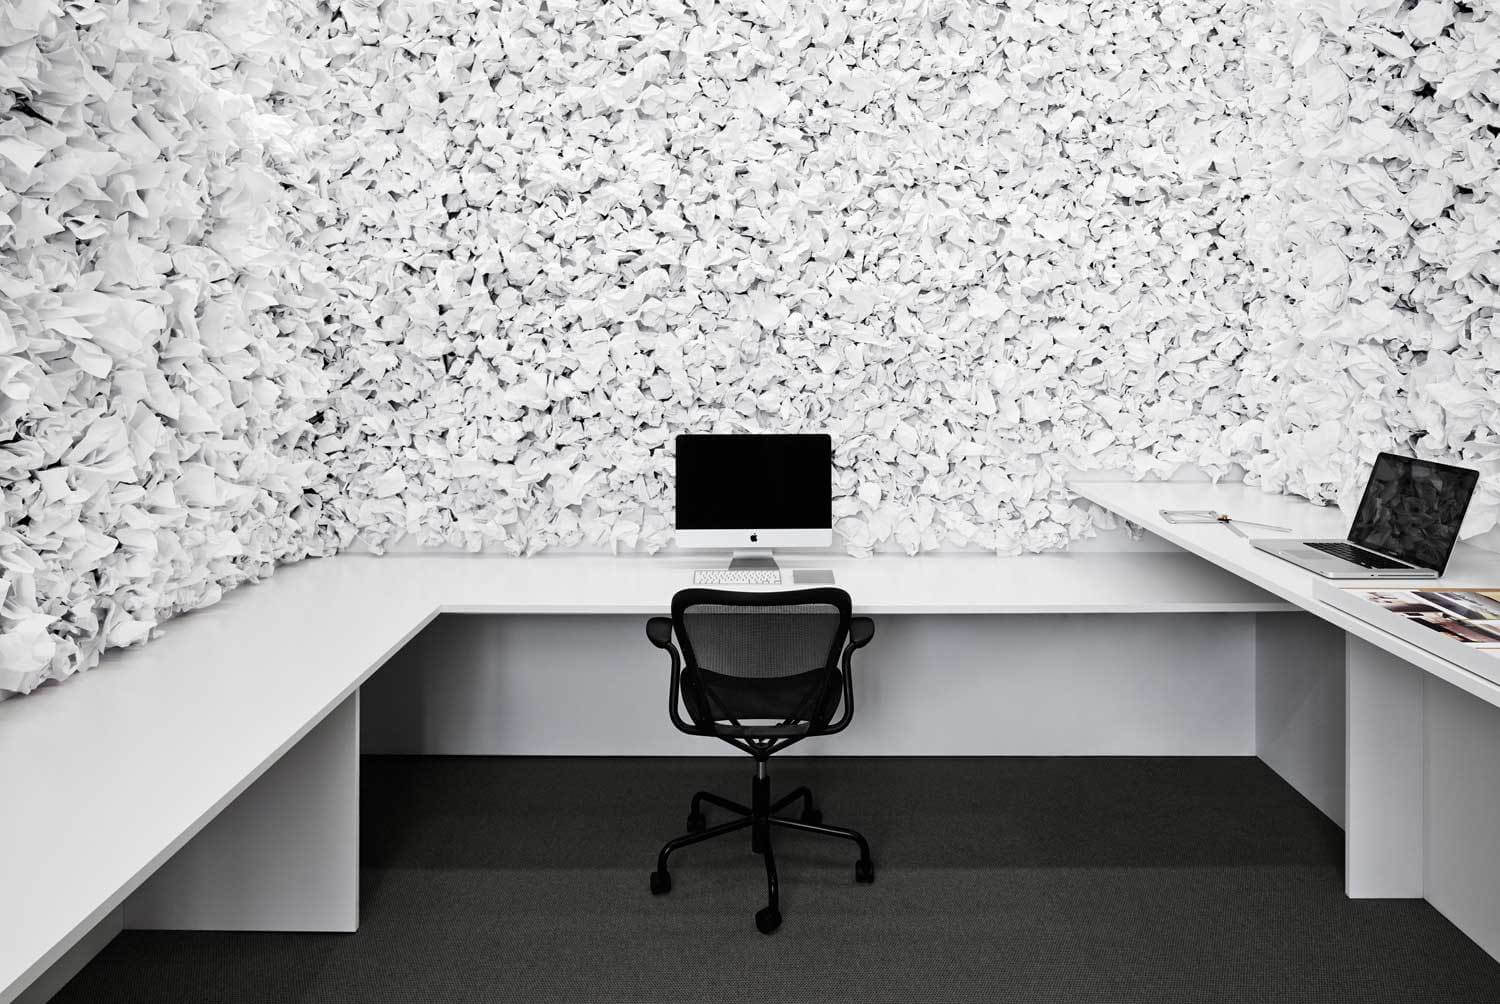 瑞典建築事務所mer辦公室設計 全球設計風向